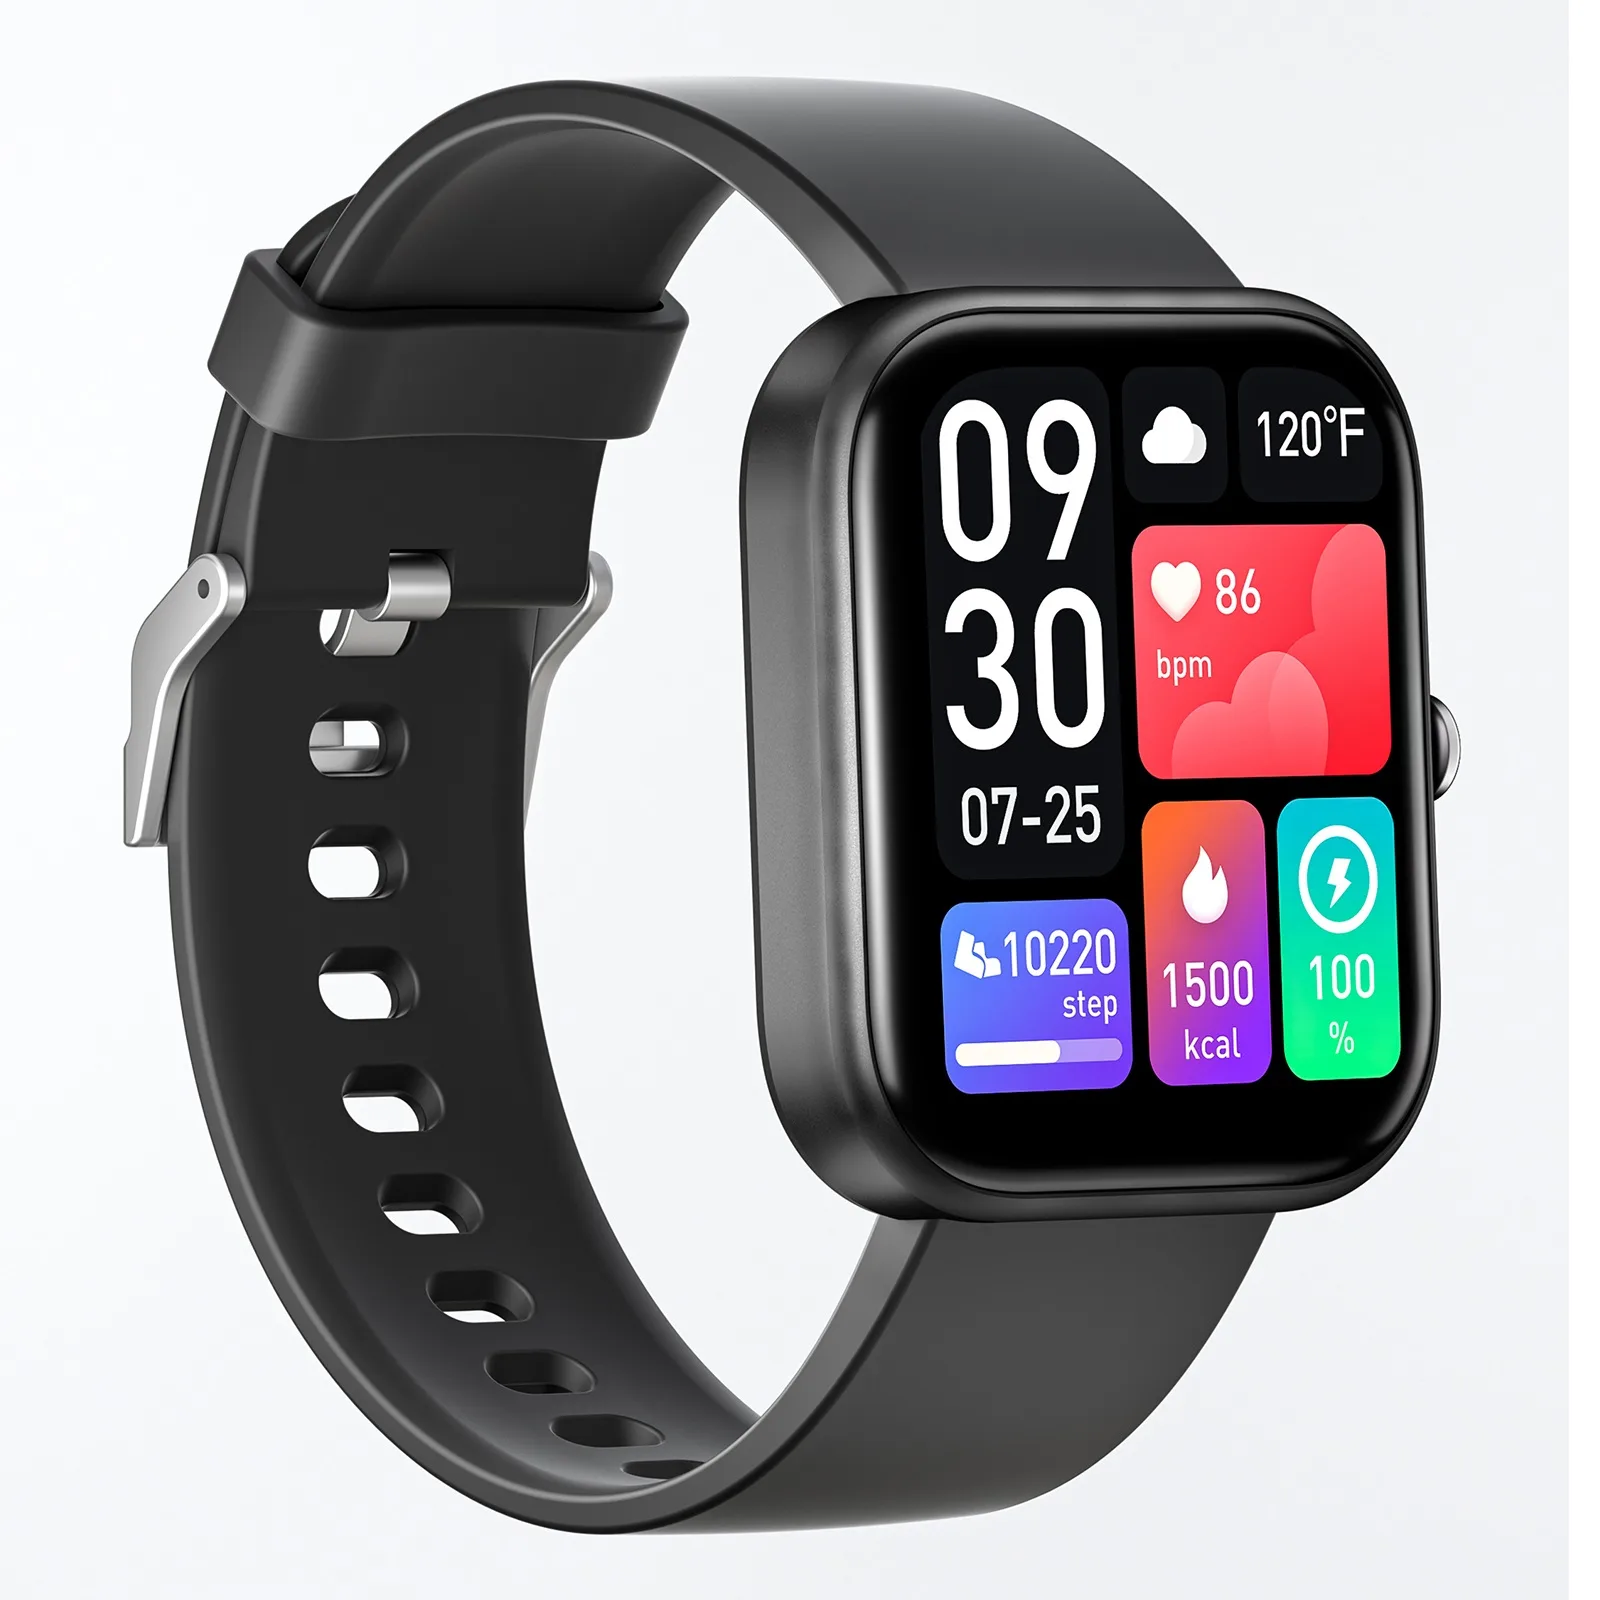 GTS5スマートウォッチ - Smart Watch, Fitness Tracker Manufacturer 